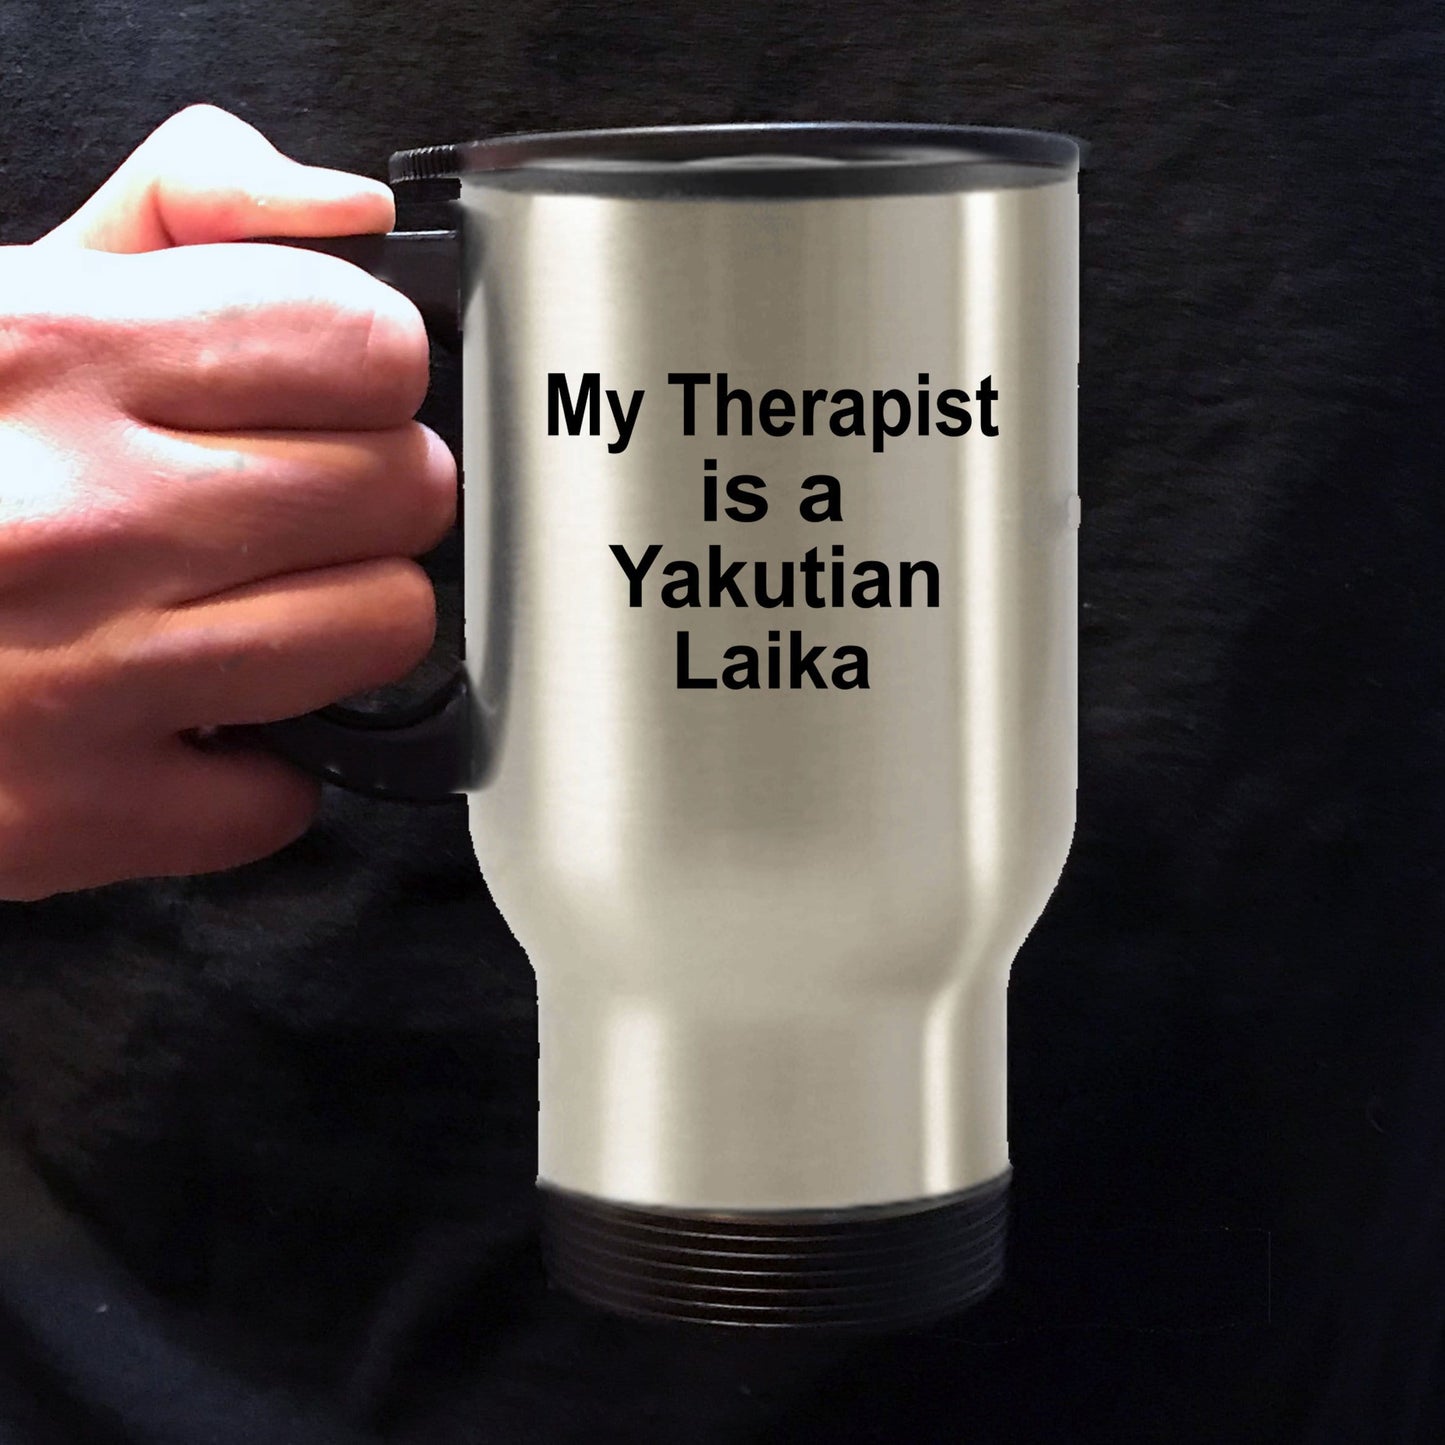 Yakutian Laika Dog Therapist Travel Coffee Mug